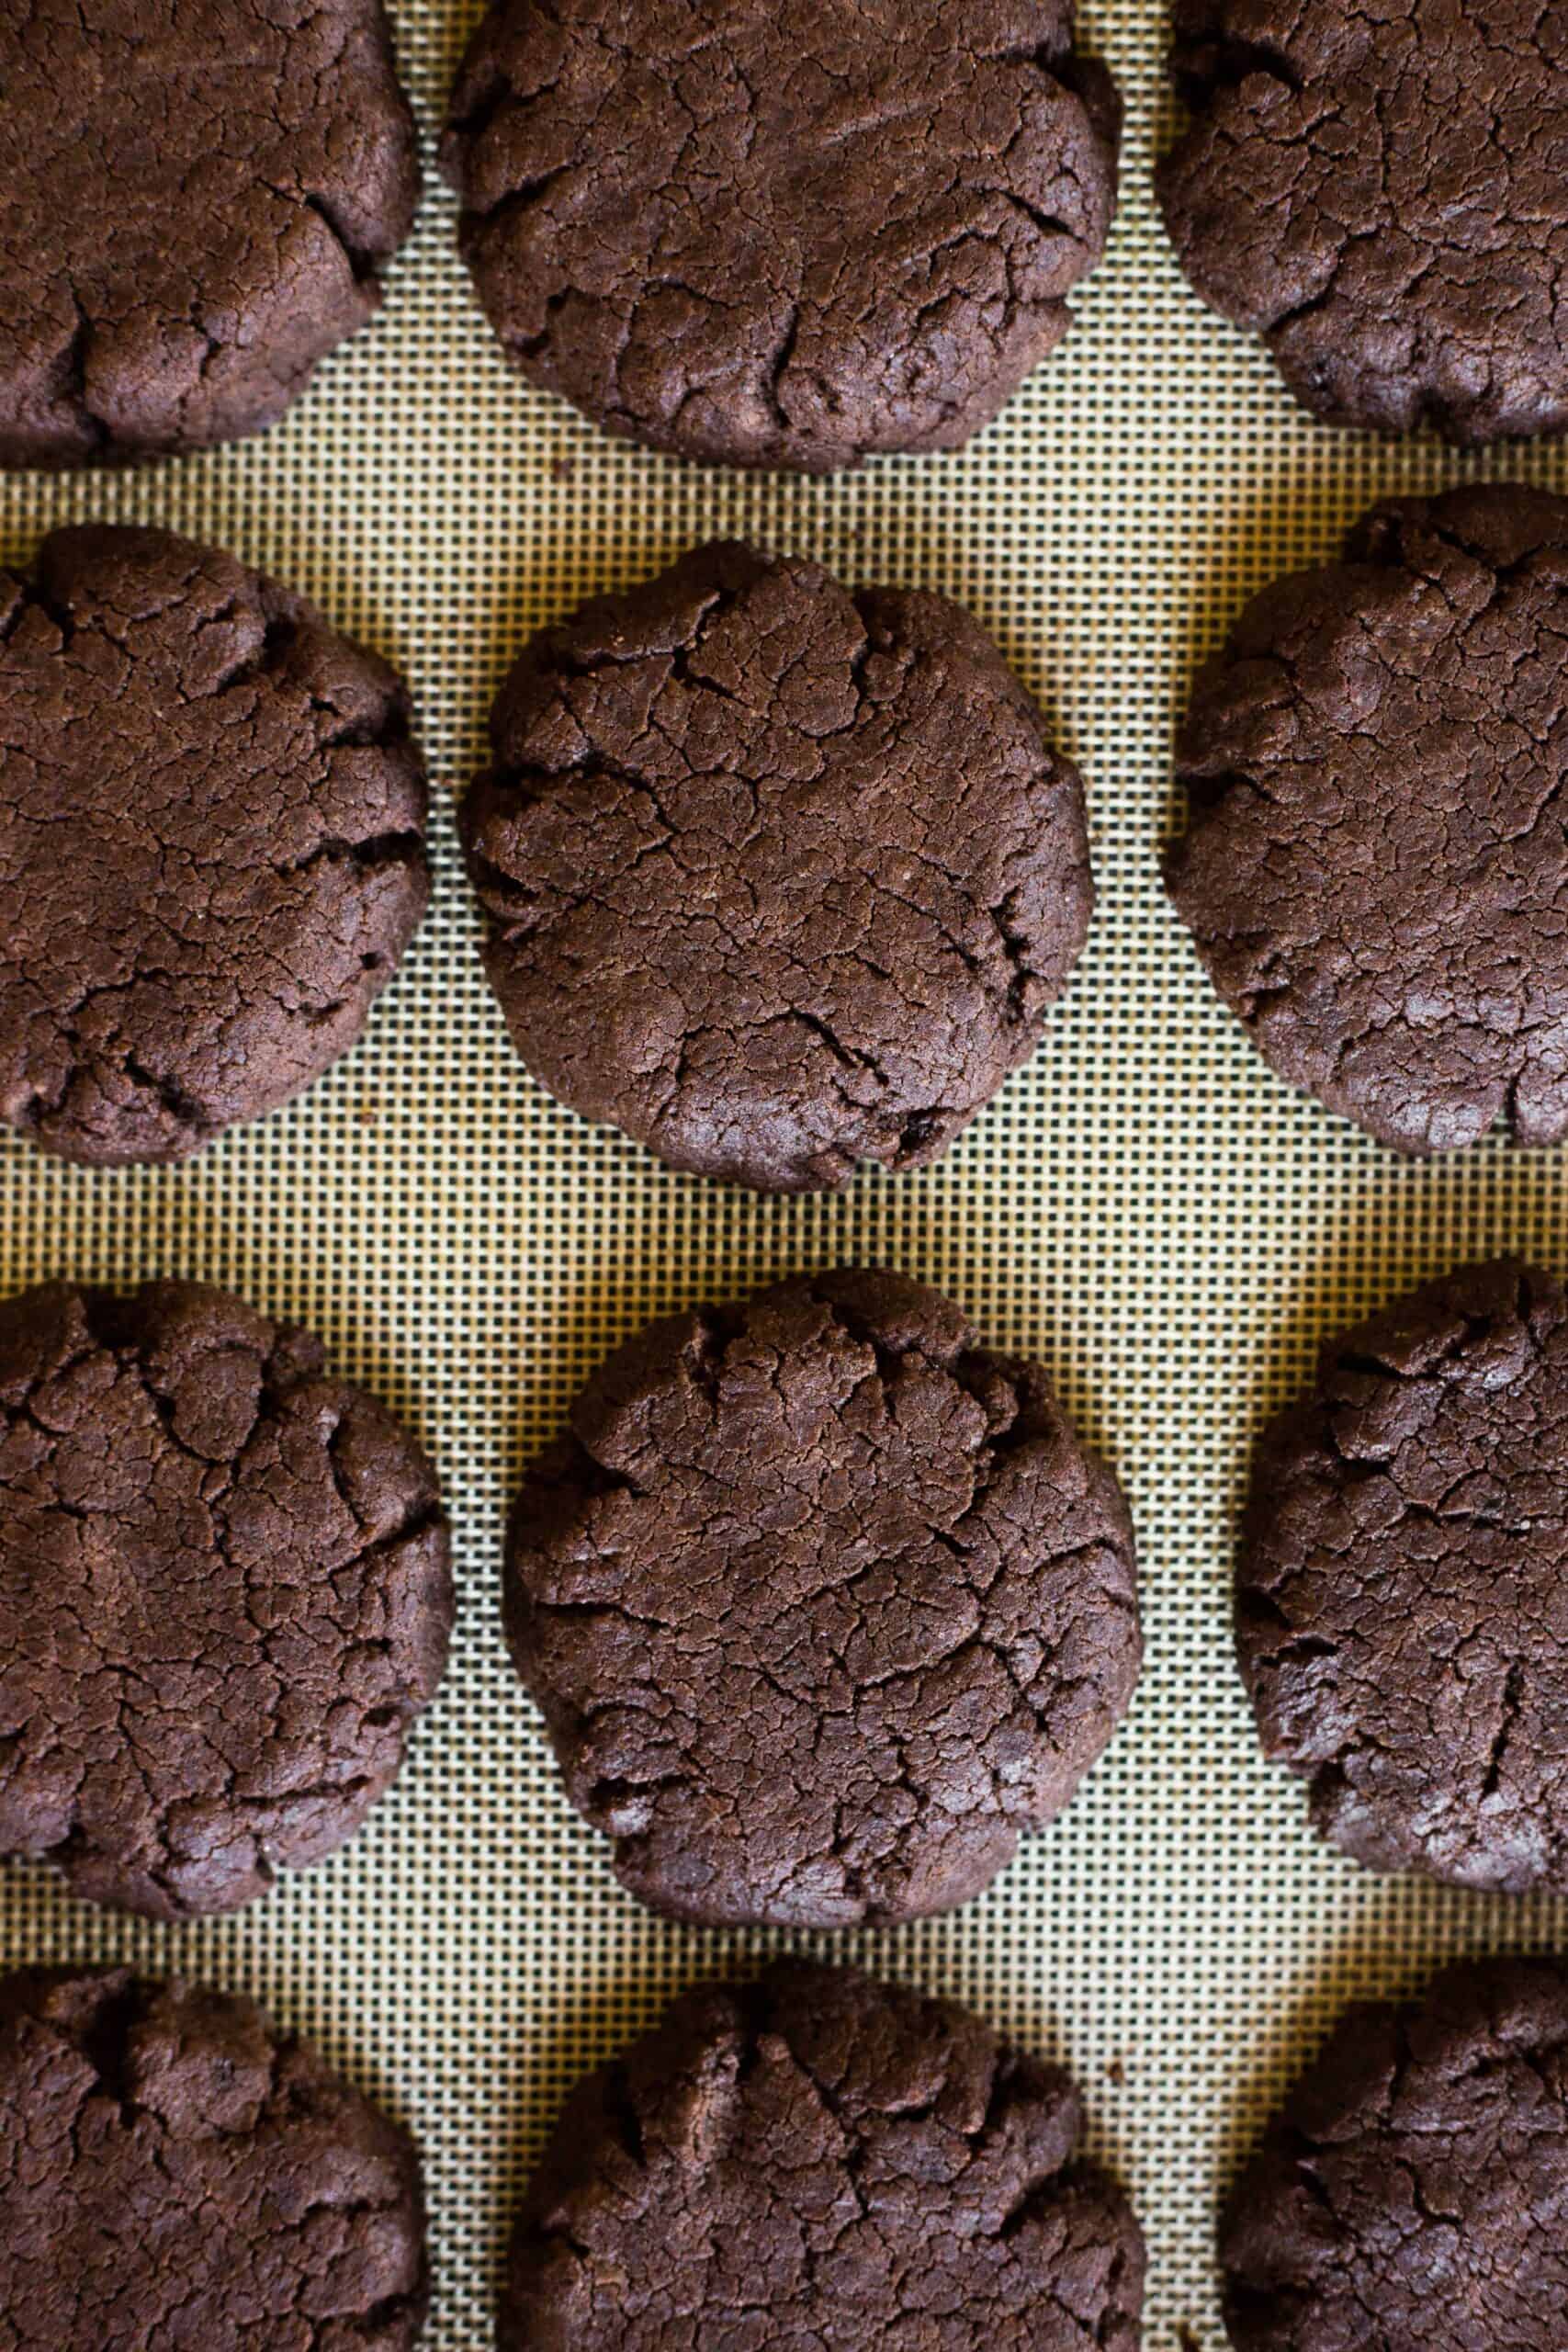 Freshly baked gluten-free brownie cookies on a silpat.